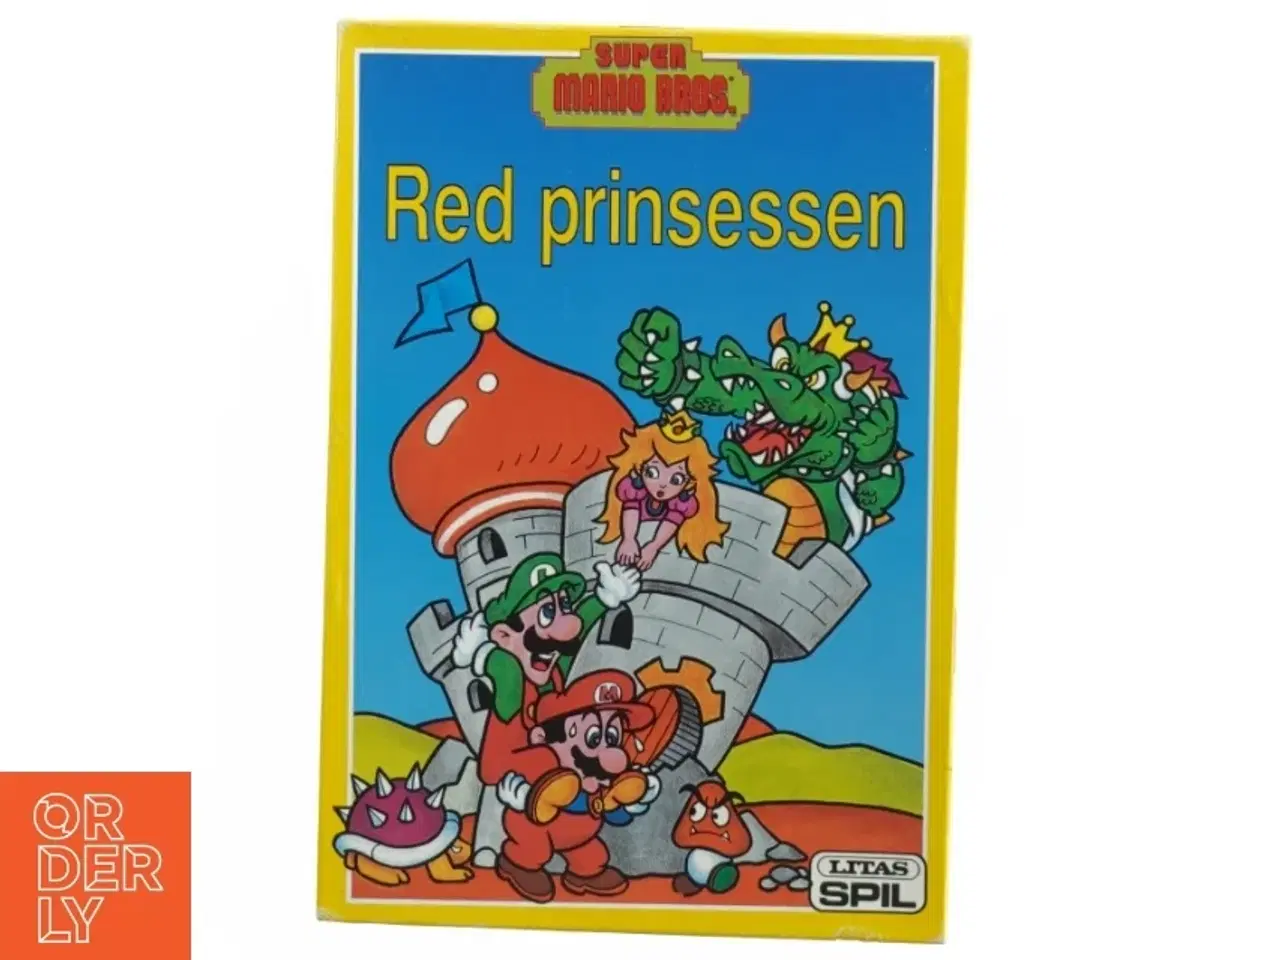 Billede 1 - Super mario bros red prinsessen fra Lrtas Spil (str. 27 x 19 cm)